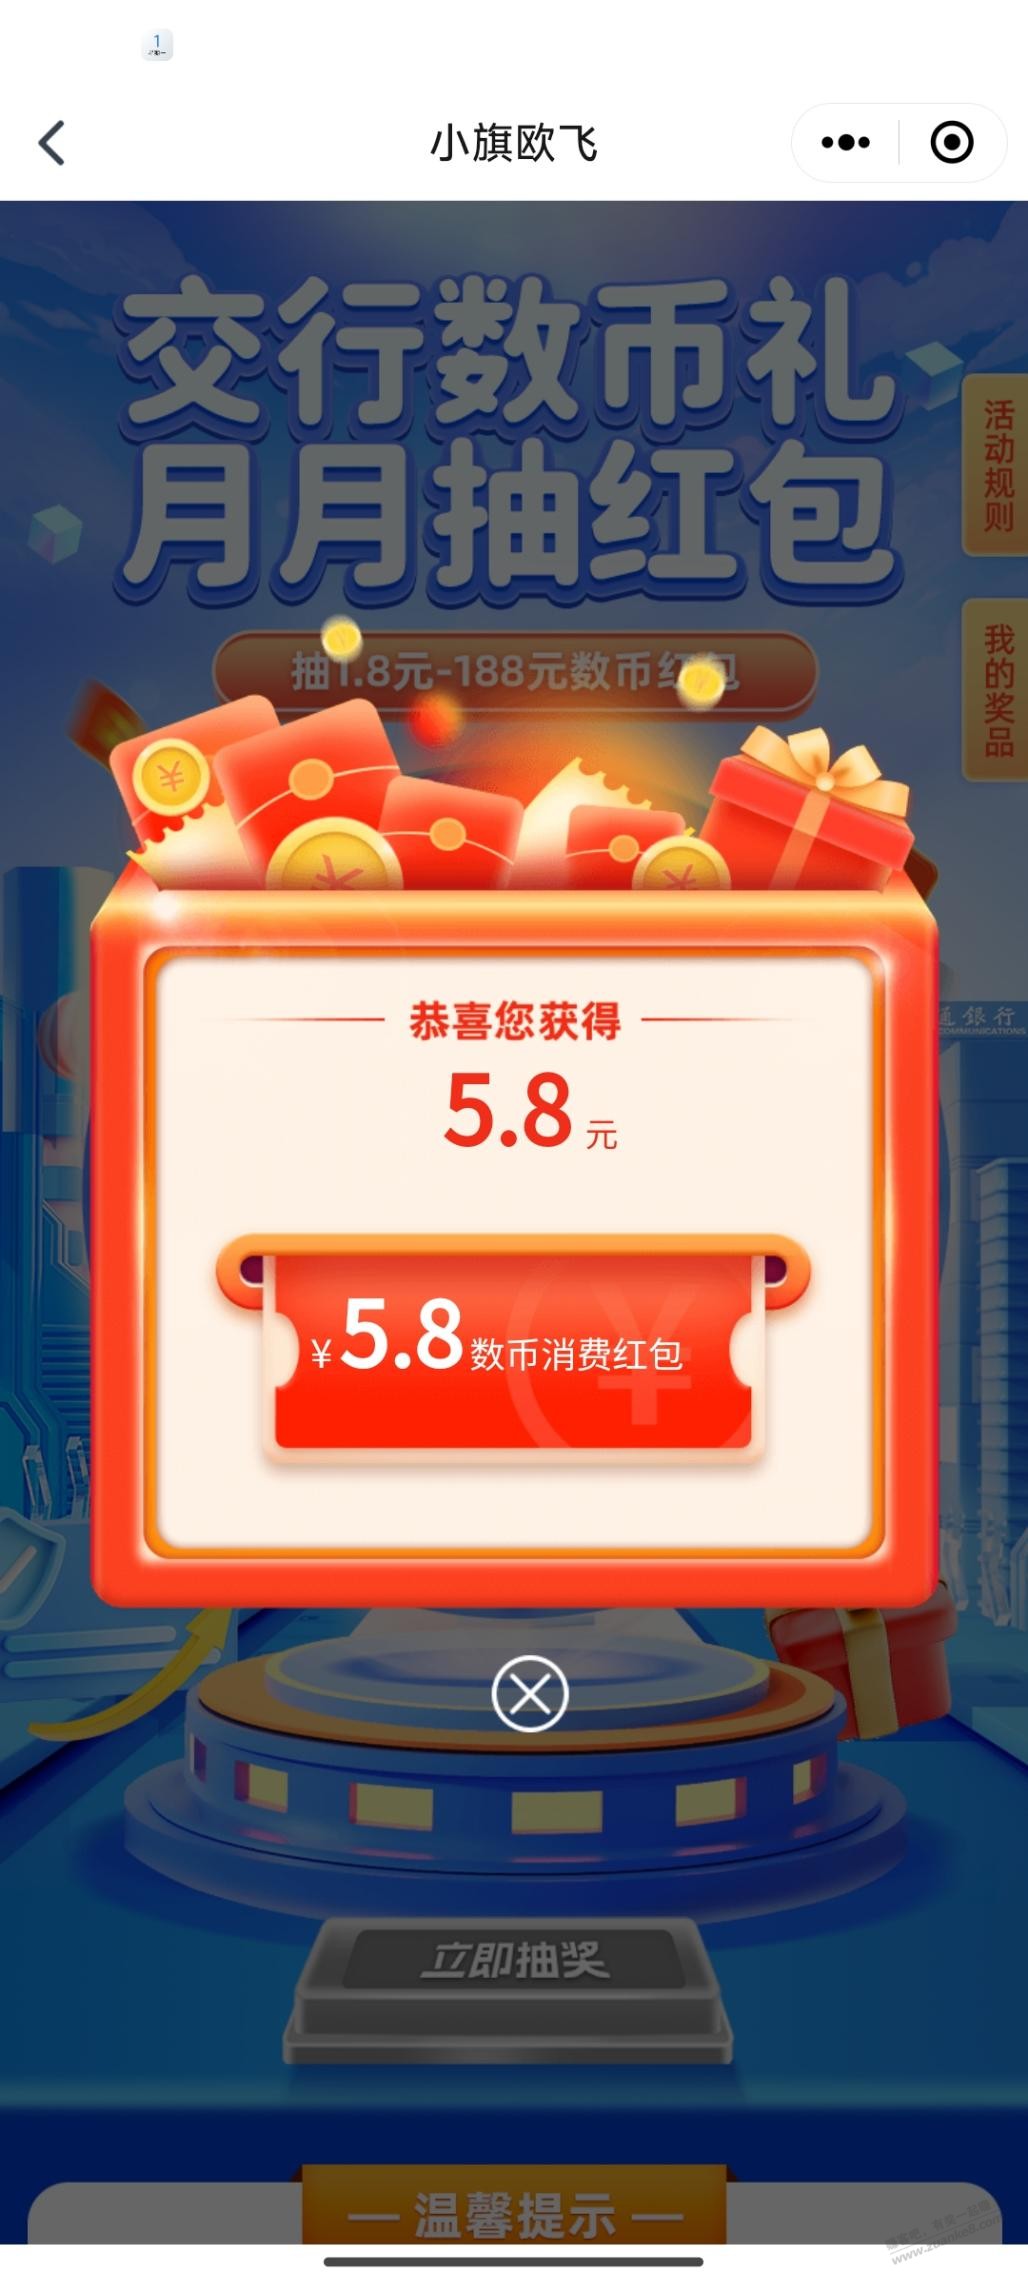 交行刚中5.8元数币红包-惠小助(52huixz.com)